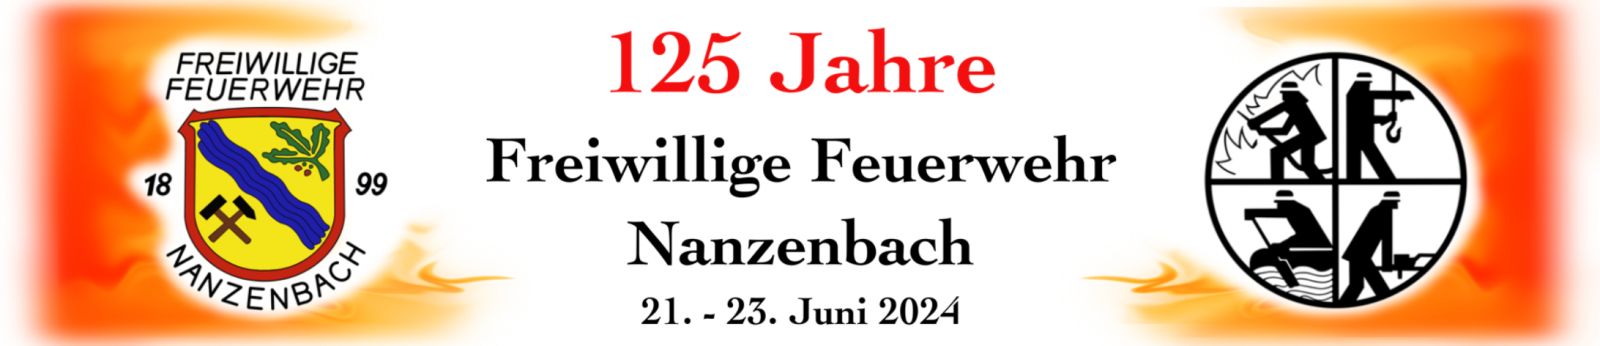 Logo 125 Jahre Freiwillige Feuerwehr Nanzenbach